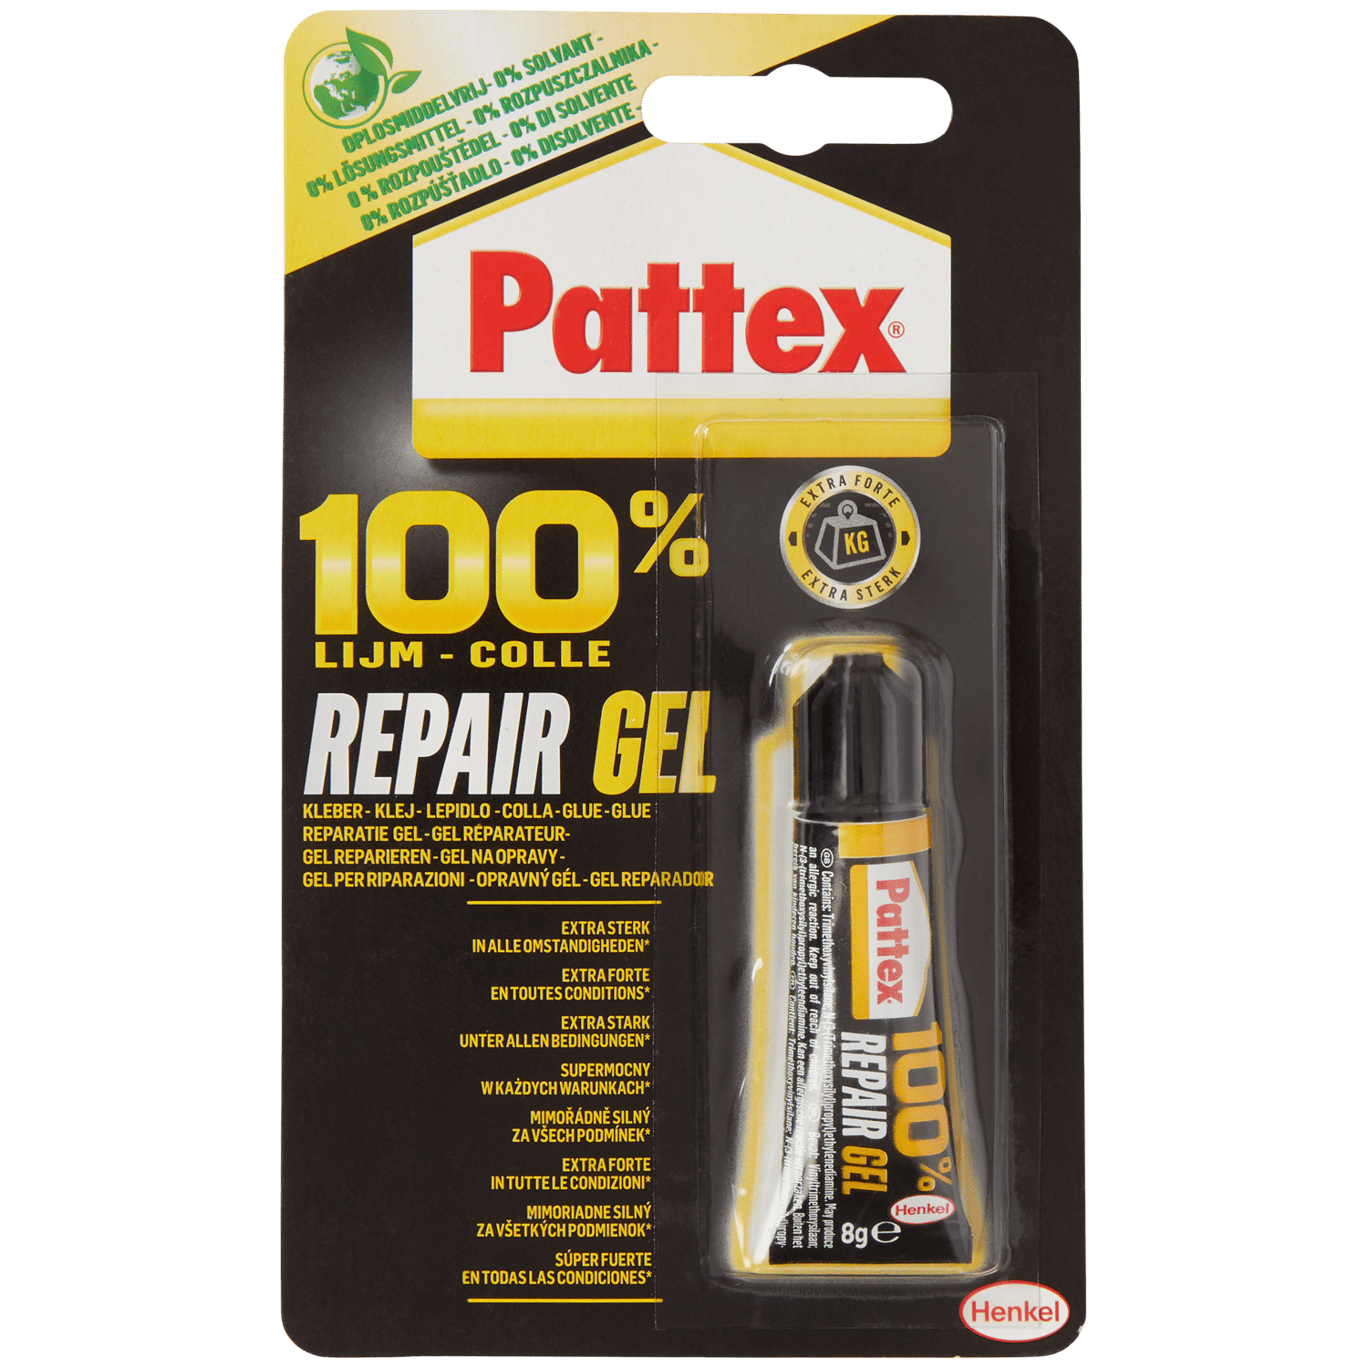 aankleden Armstrong Sortie Pattex 100% repair gel-lijm | Action.com